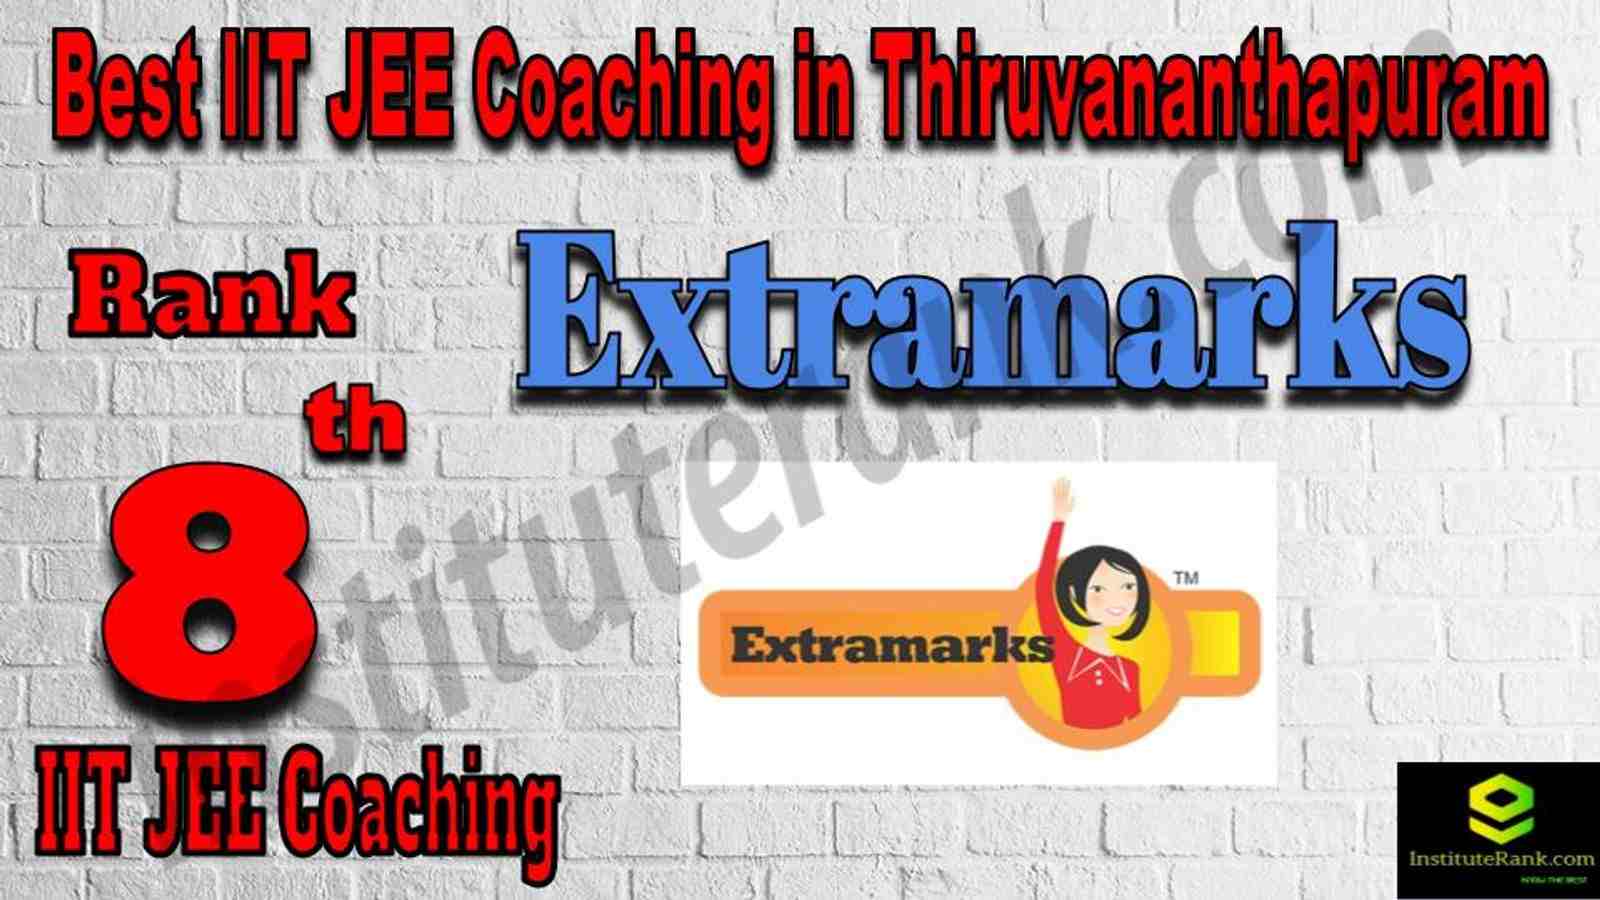 8th Best IIT JEE Coaching in Thiruvananthapuram